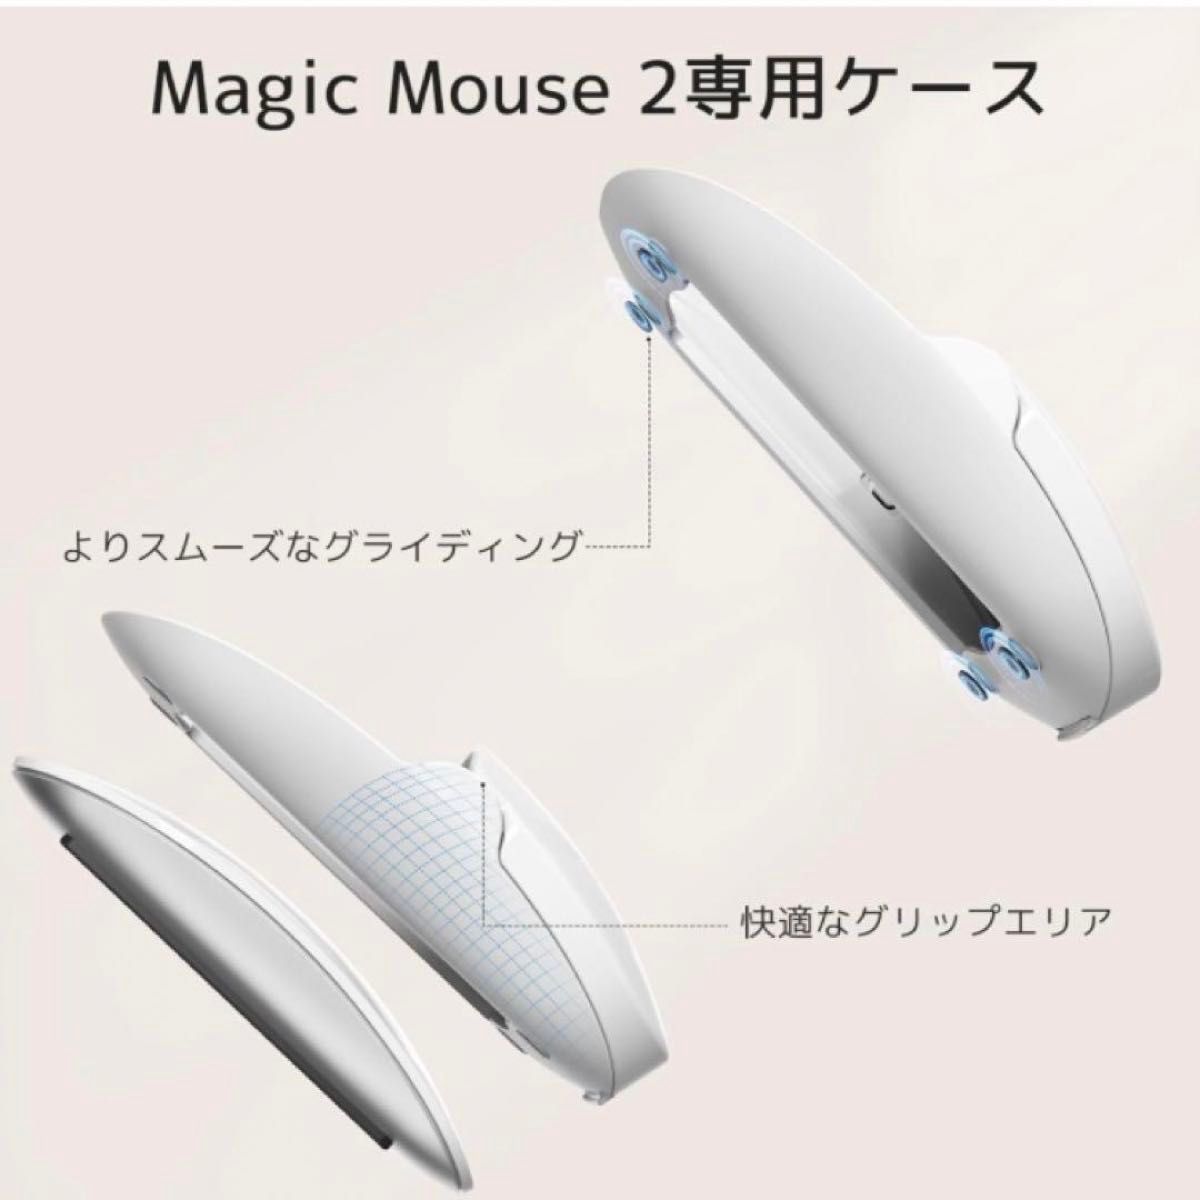 マジックマウスグリップ マウスリストレスト付き ホワイト ホワイト